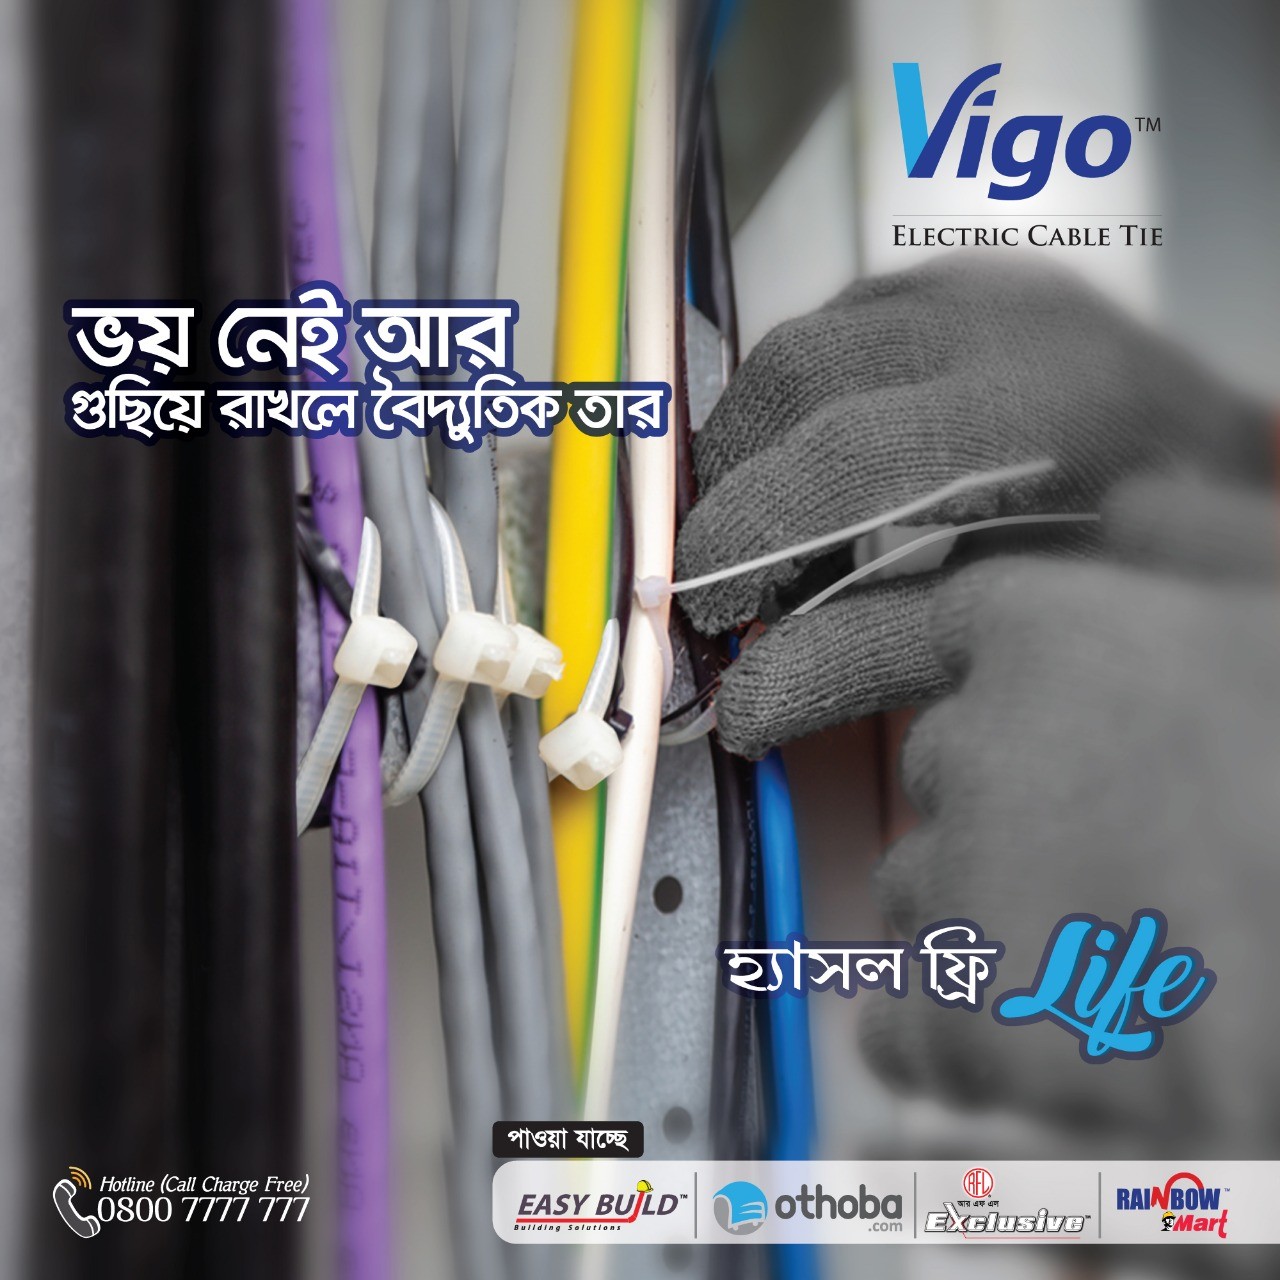 Vigo Electric Cable Tie